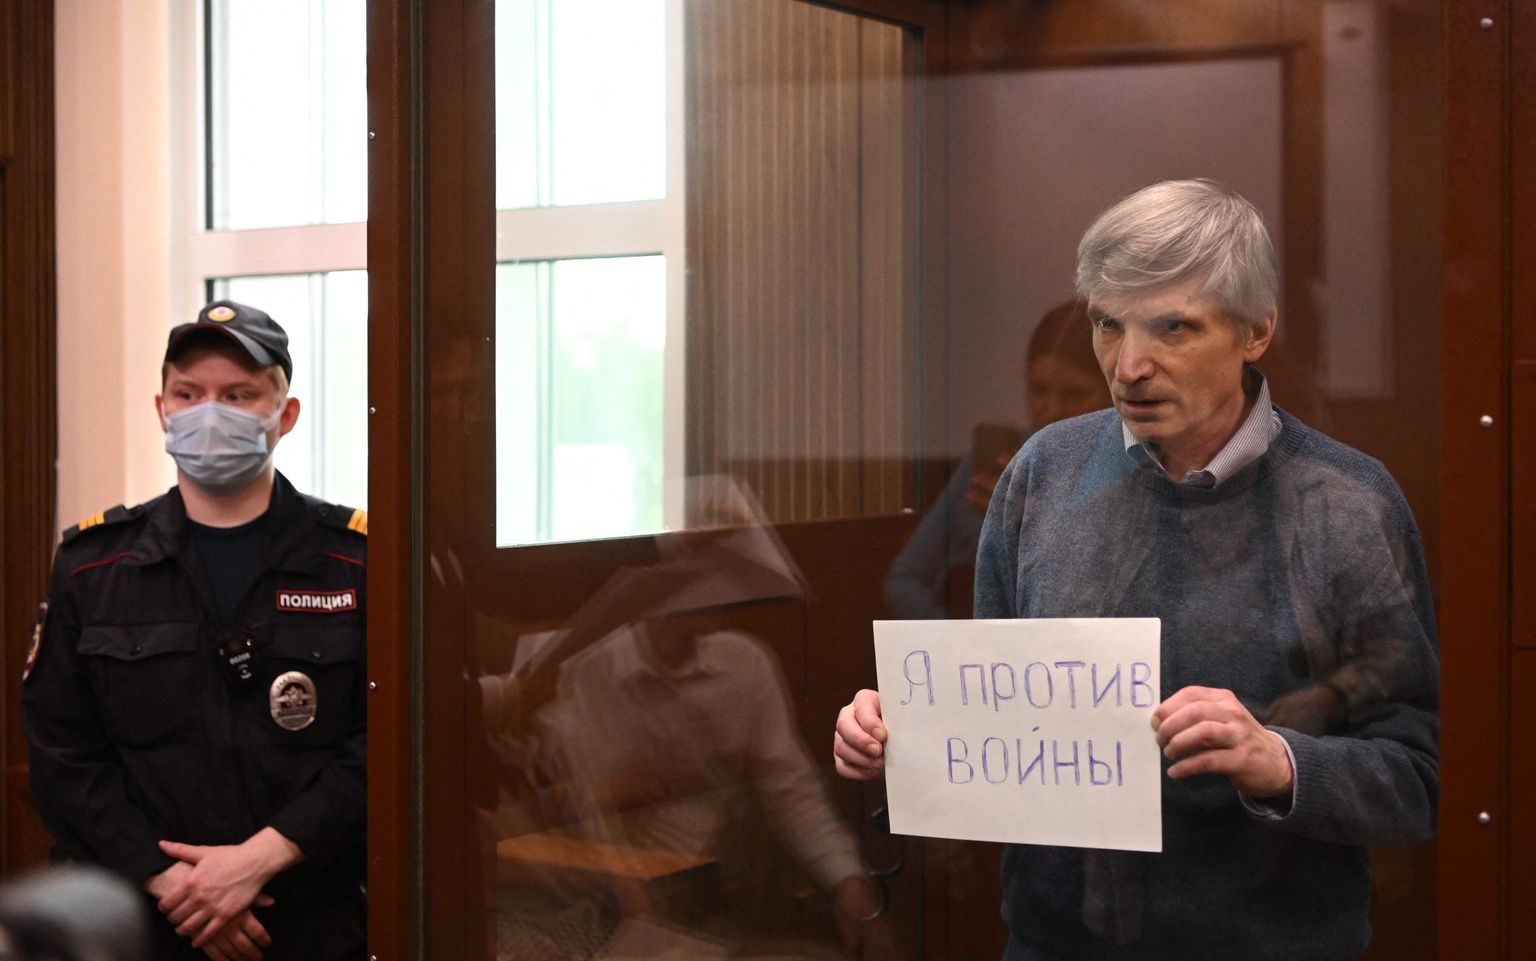 Депутат Алексей Горинов держит лист бумаги с надписью «Я против войны» в стеклянной камере во время судебного заседани, 21 июня 2022 года